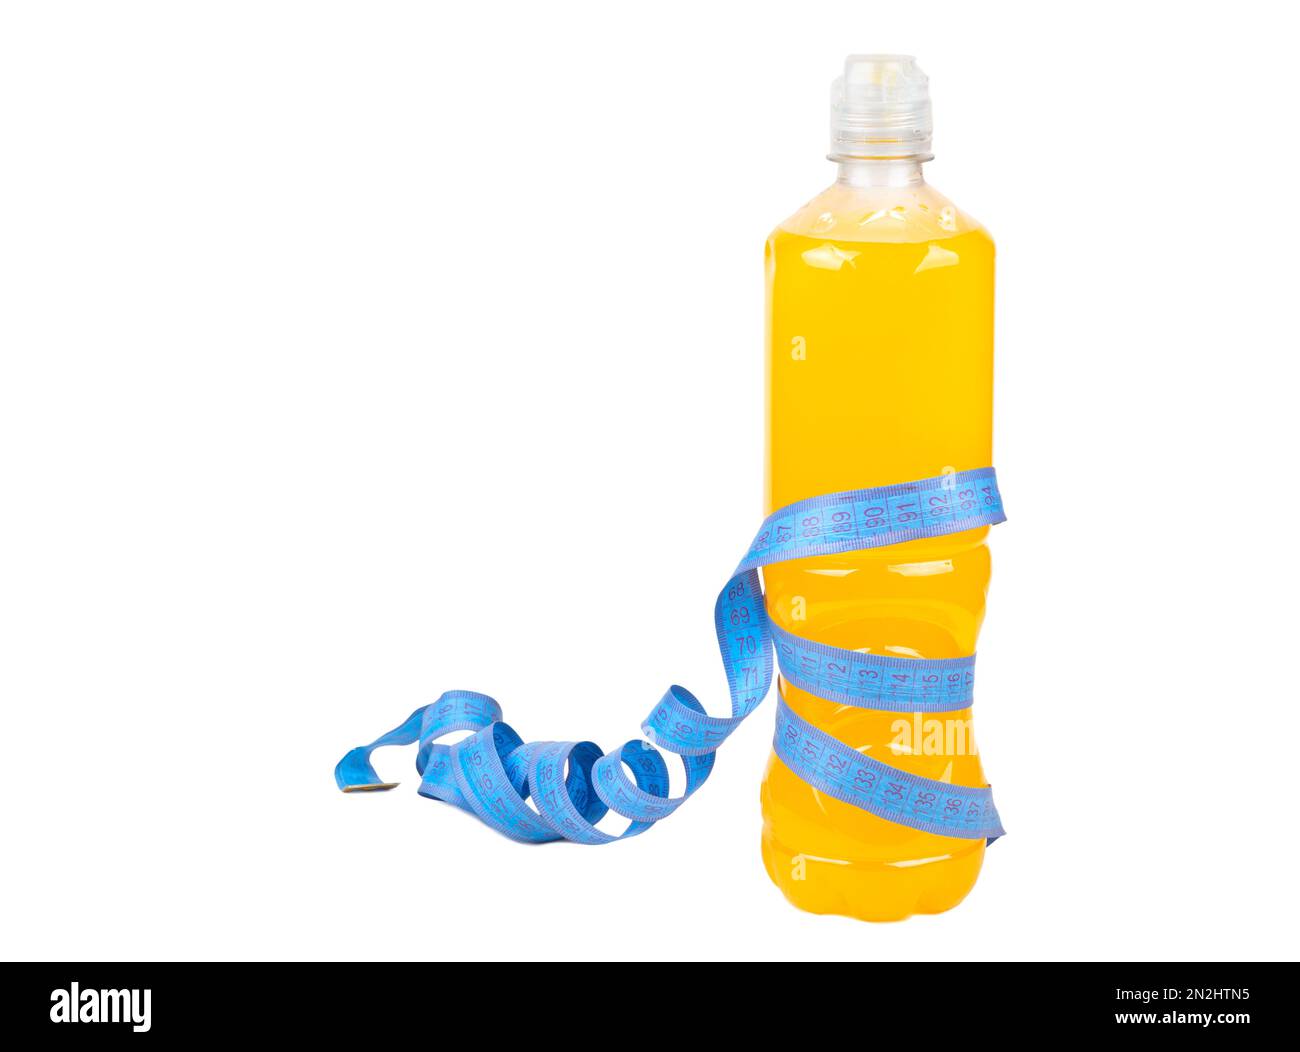 Bouteille en plastique avec boisson isotonique orange enveloppée d'un centimètre de mesure isolé sur fond blanc. Le concept de perte de poids et de fonctionnement. Banque D'Images